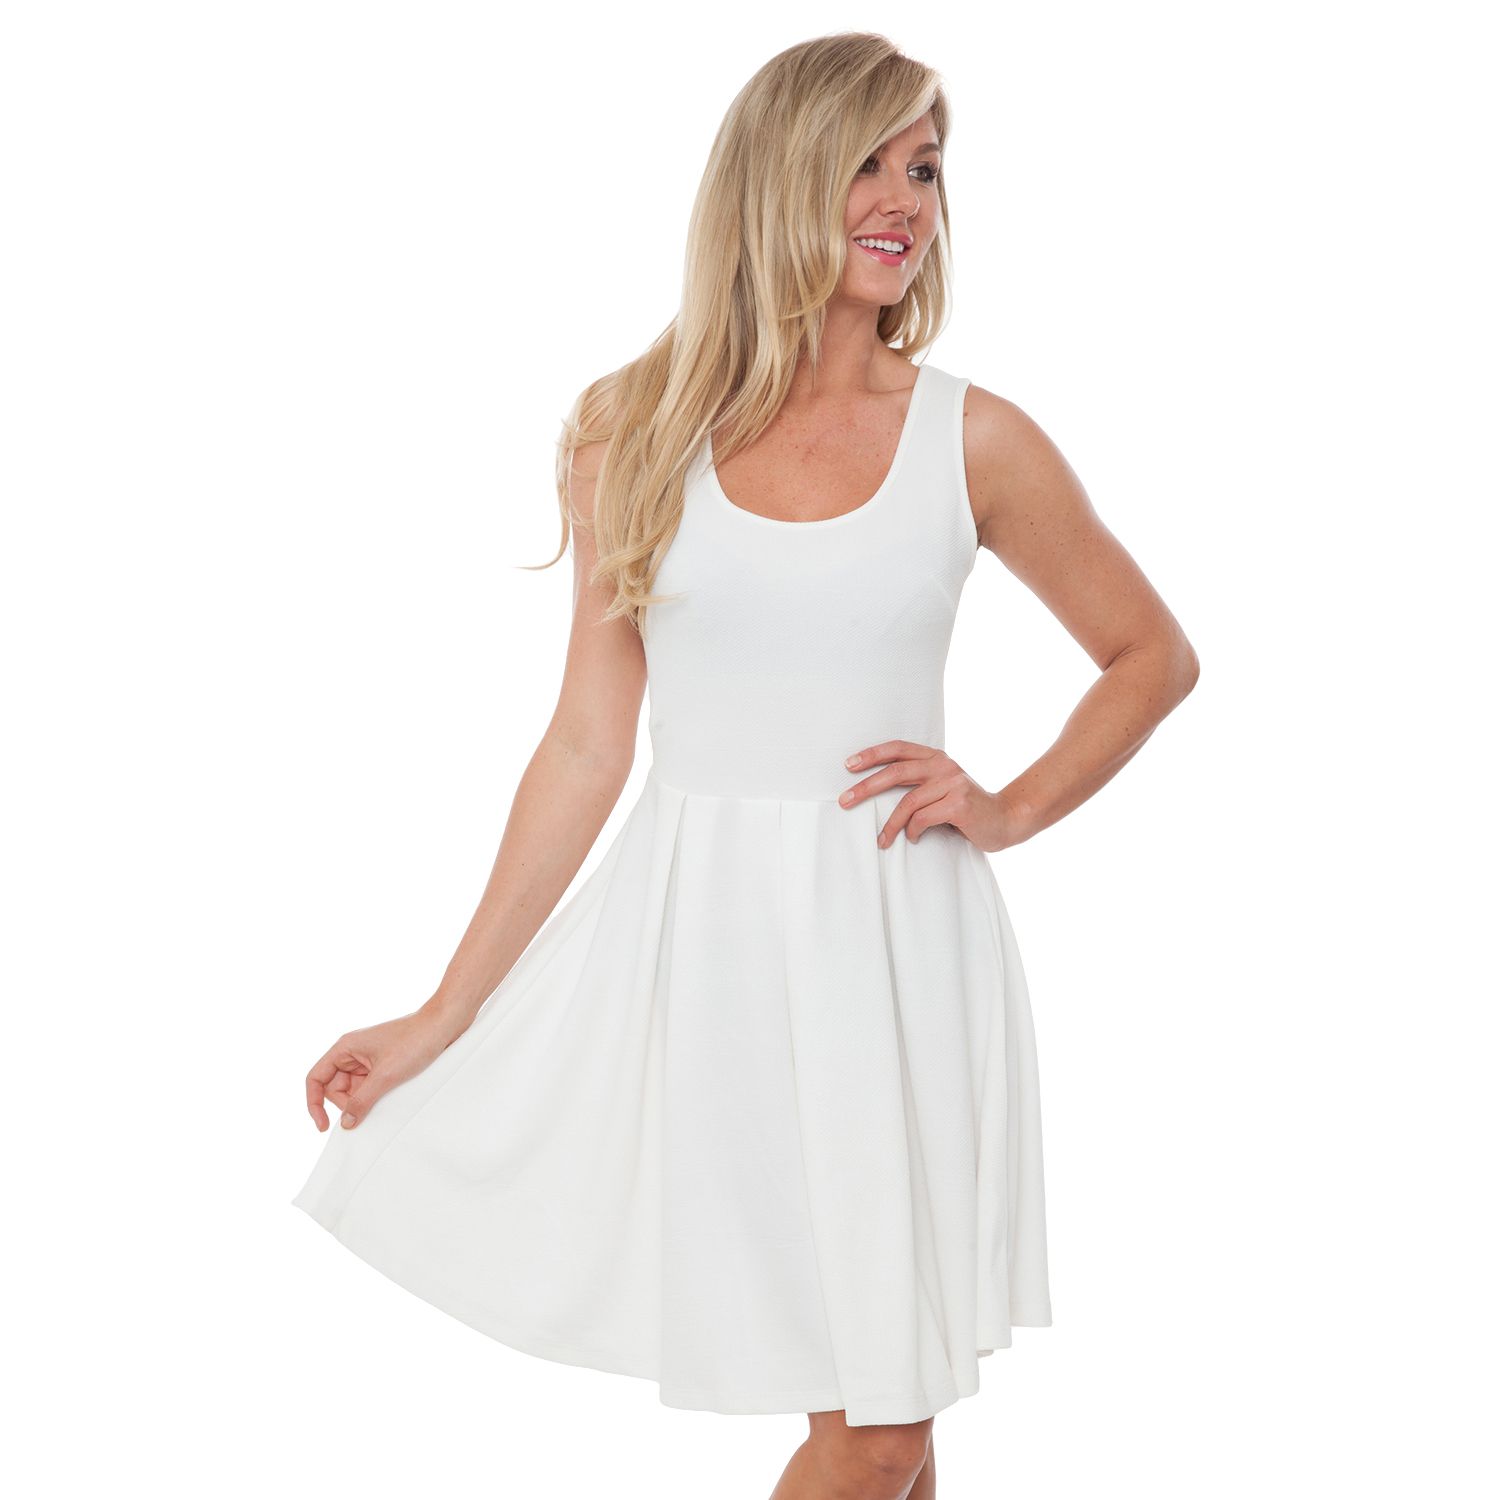 Women's White Dresses | Kohl's